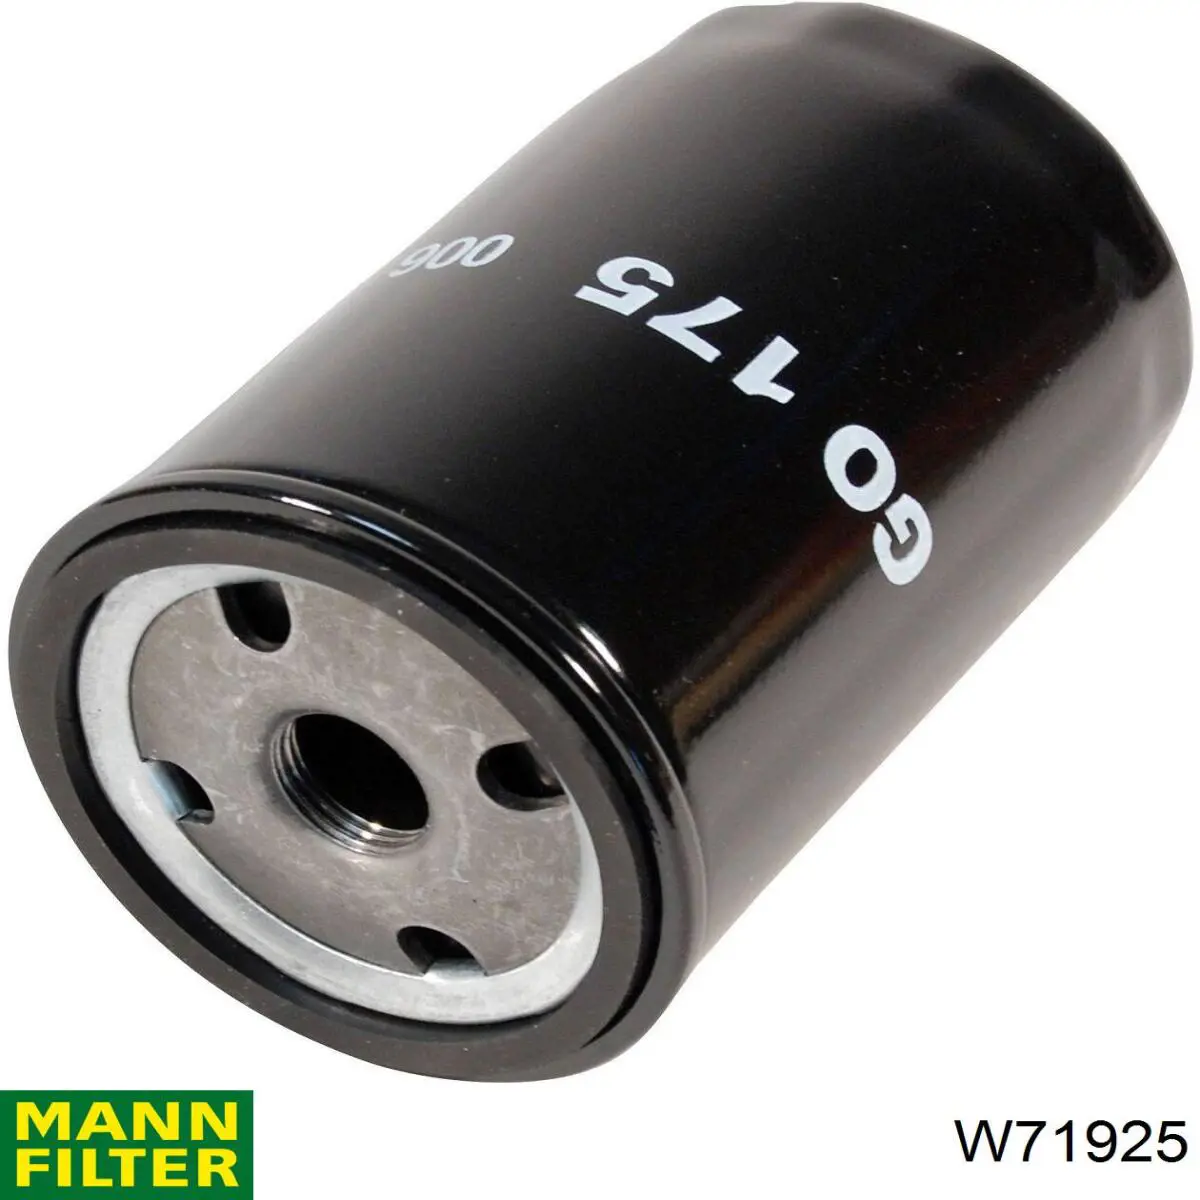 Filtro de aceite W71925 Mann-Filter